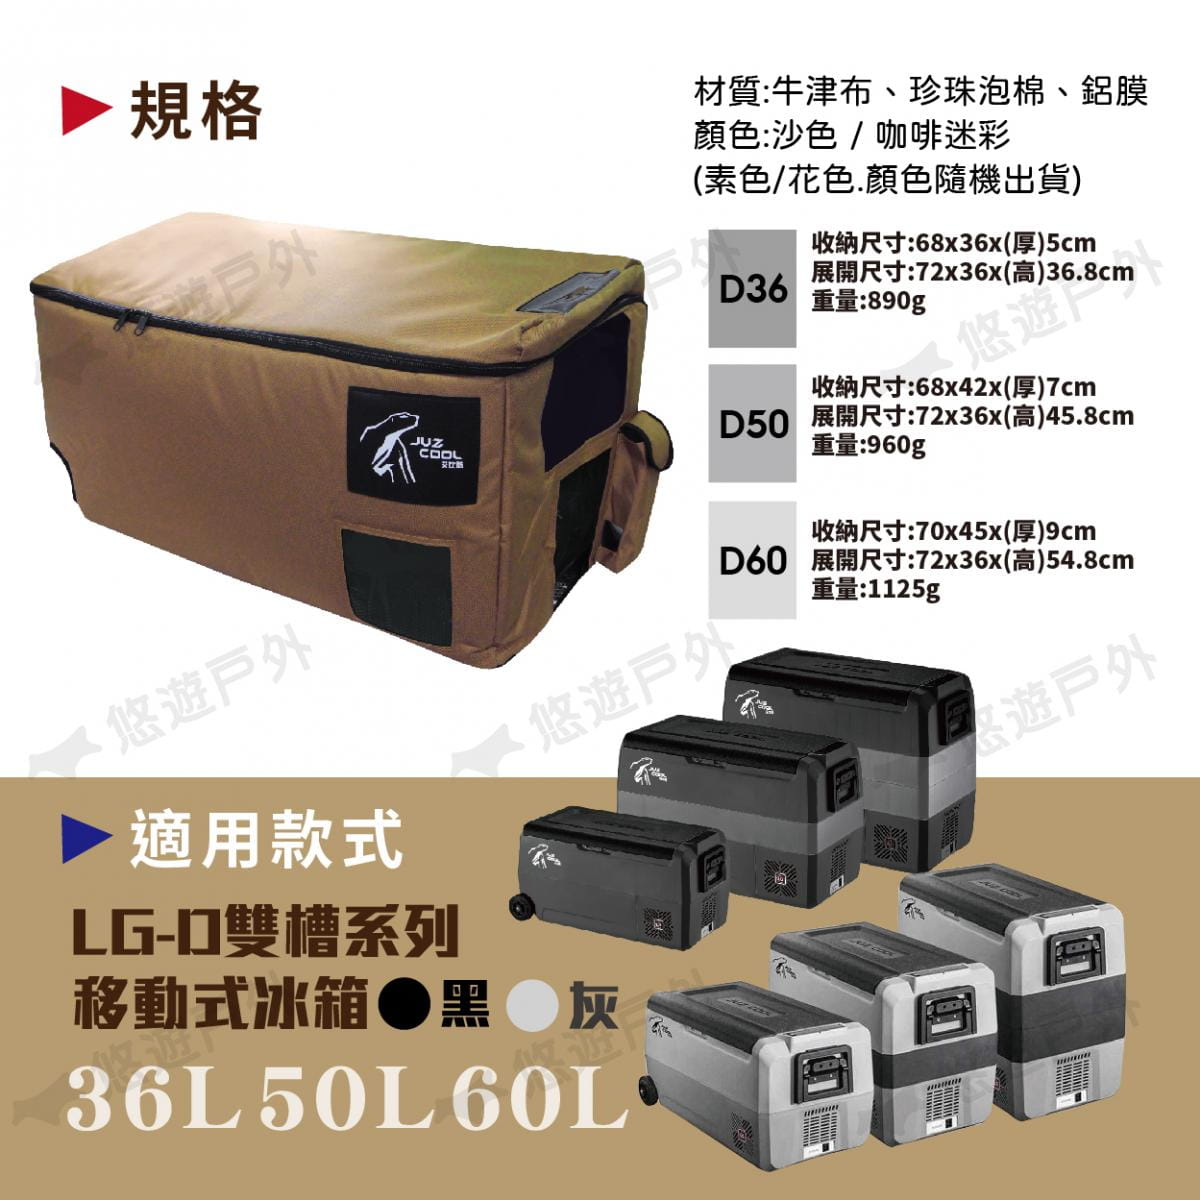 【艾比酷】LG-D系列雙槽冰箱保護套 (悠遊戶外) 7